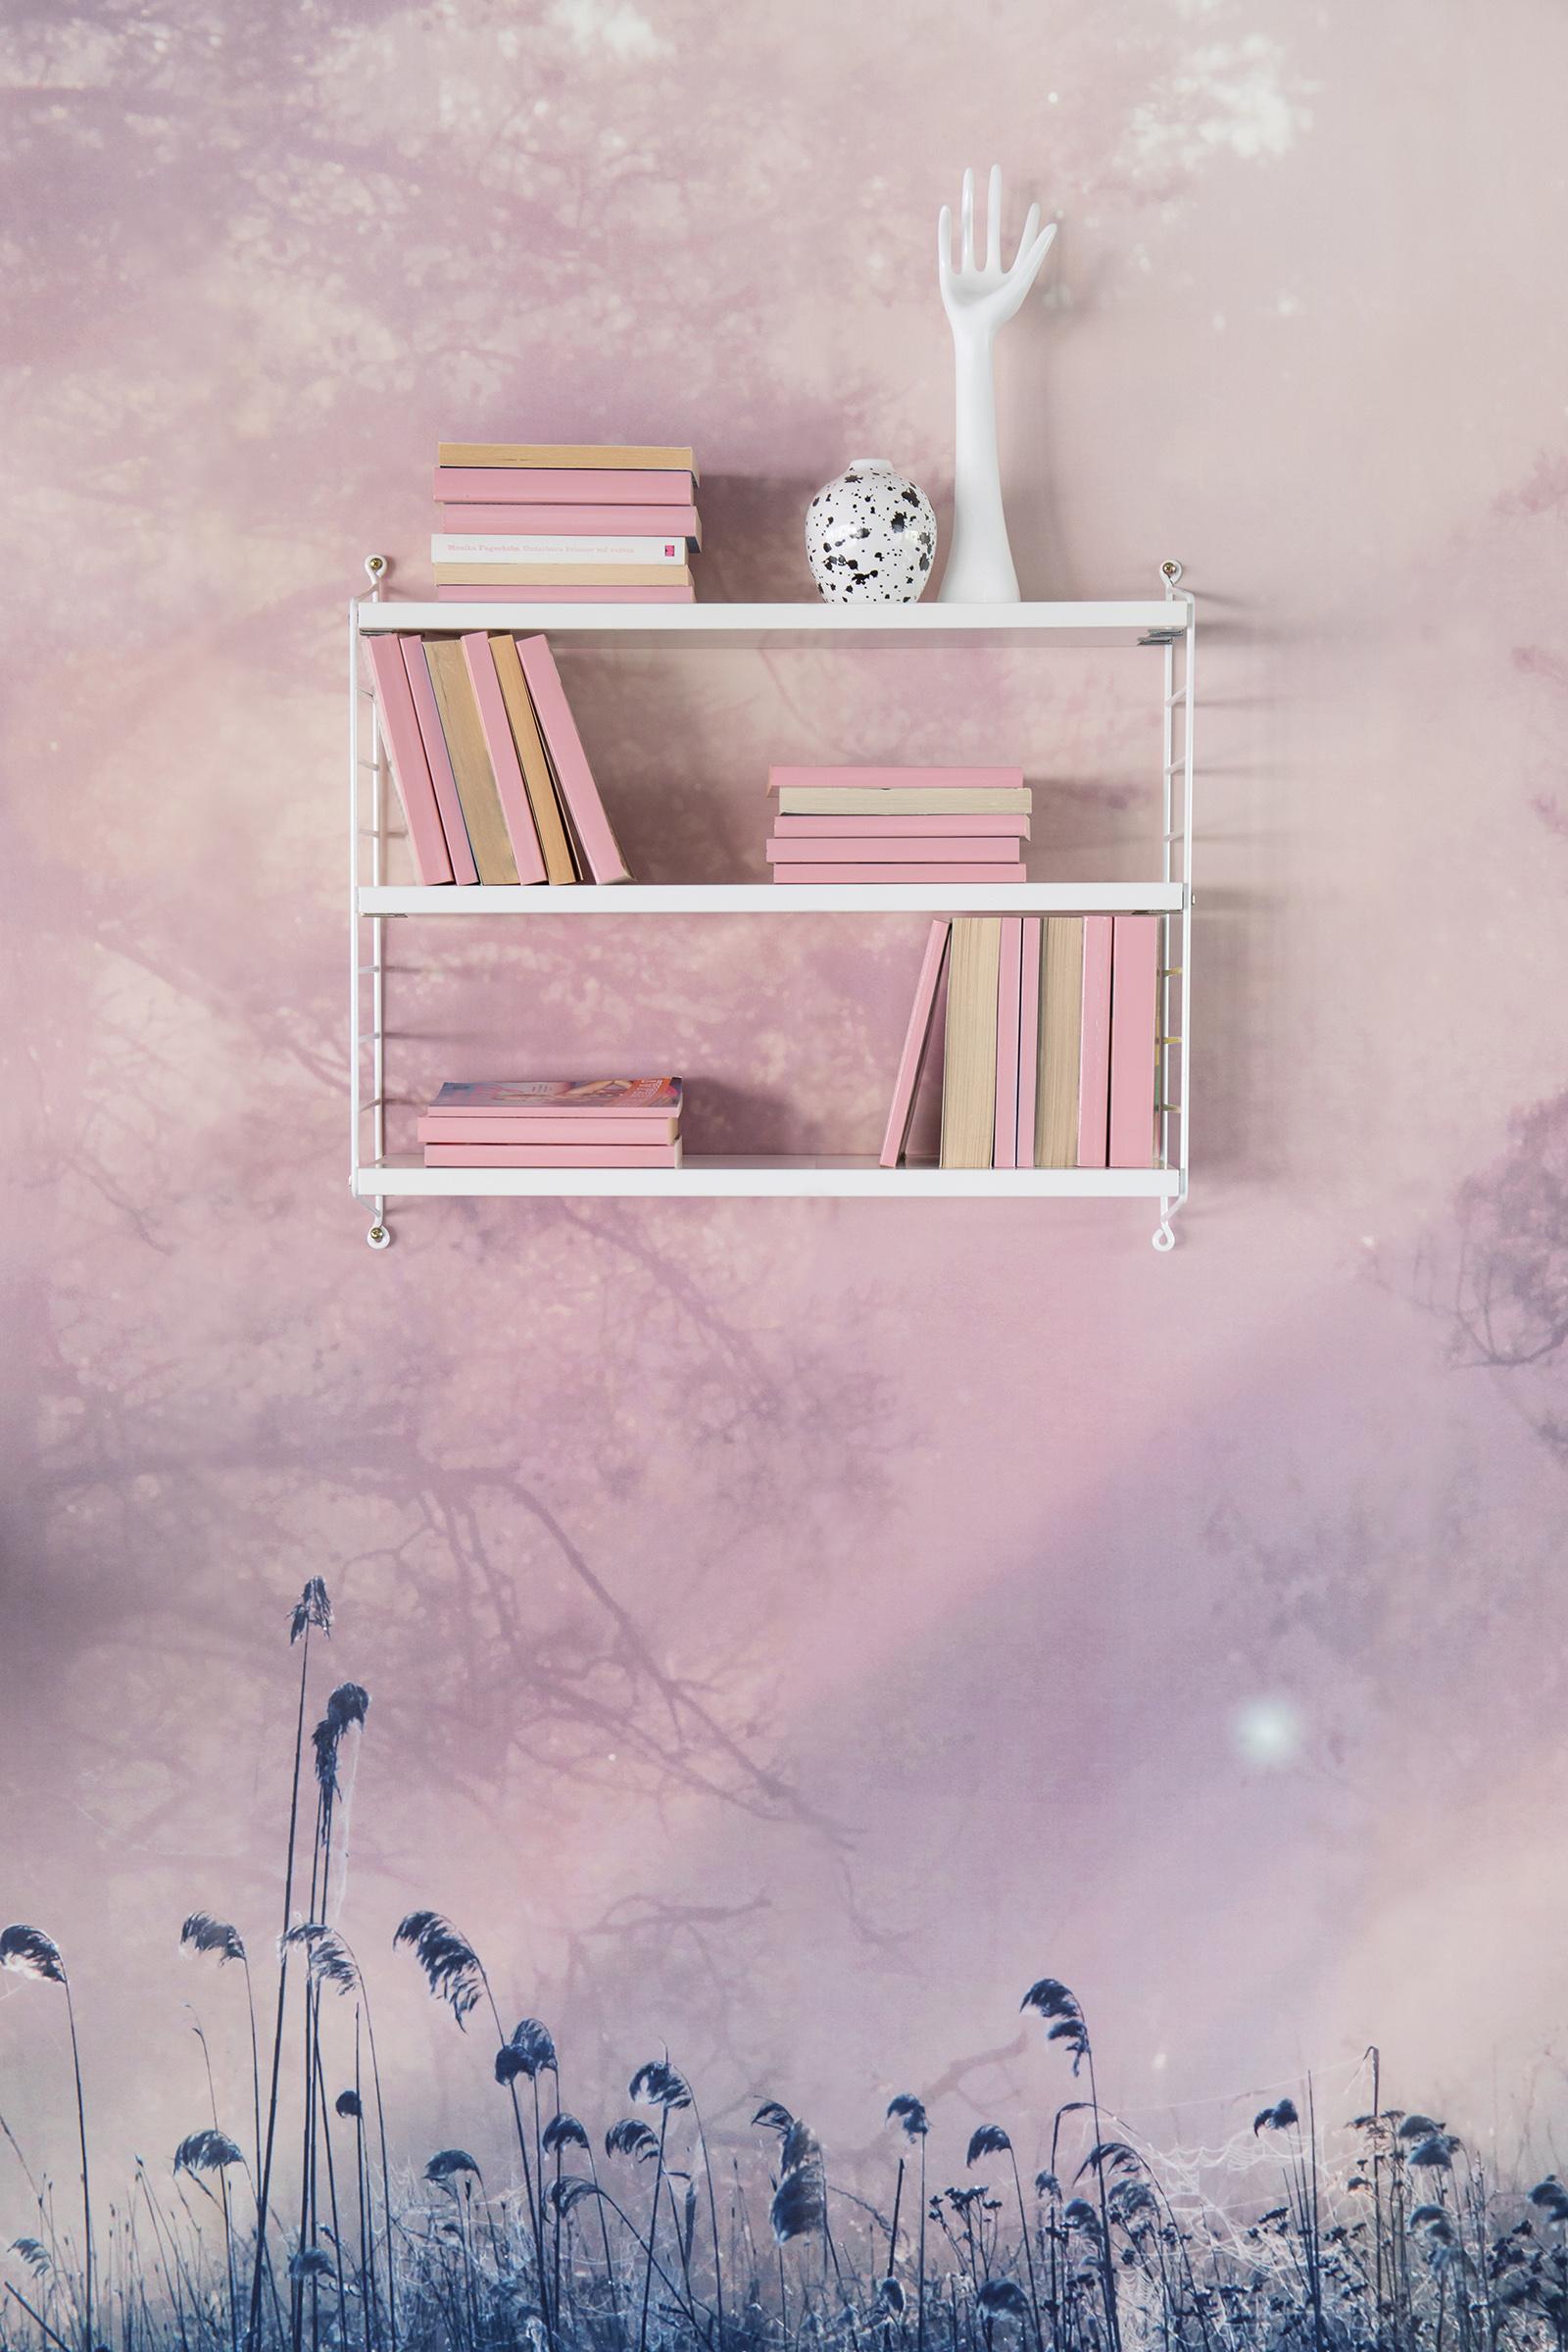 Der Oktober im Hause Rebel Walls ist #rosa und so ist auch der Inhalt in unserem #regal 🌈
#wandgestaltung #tapete